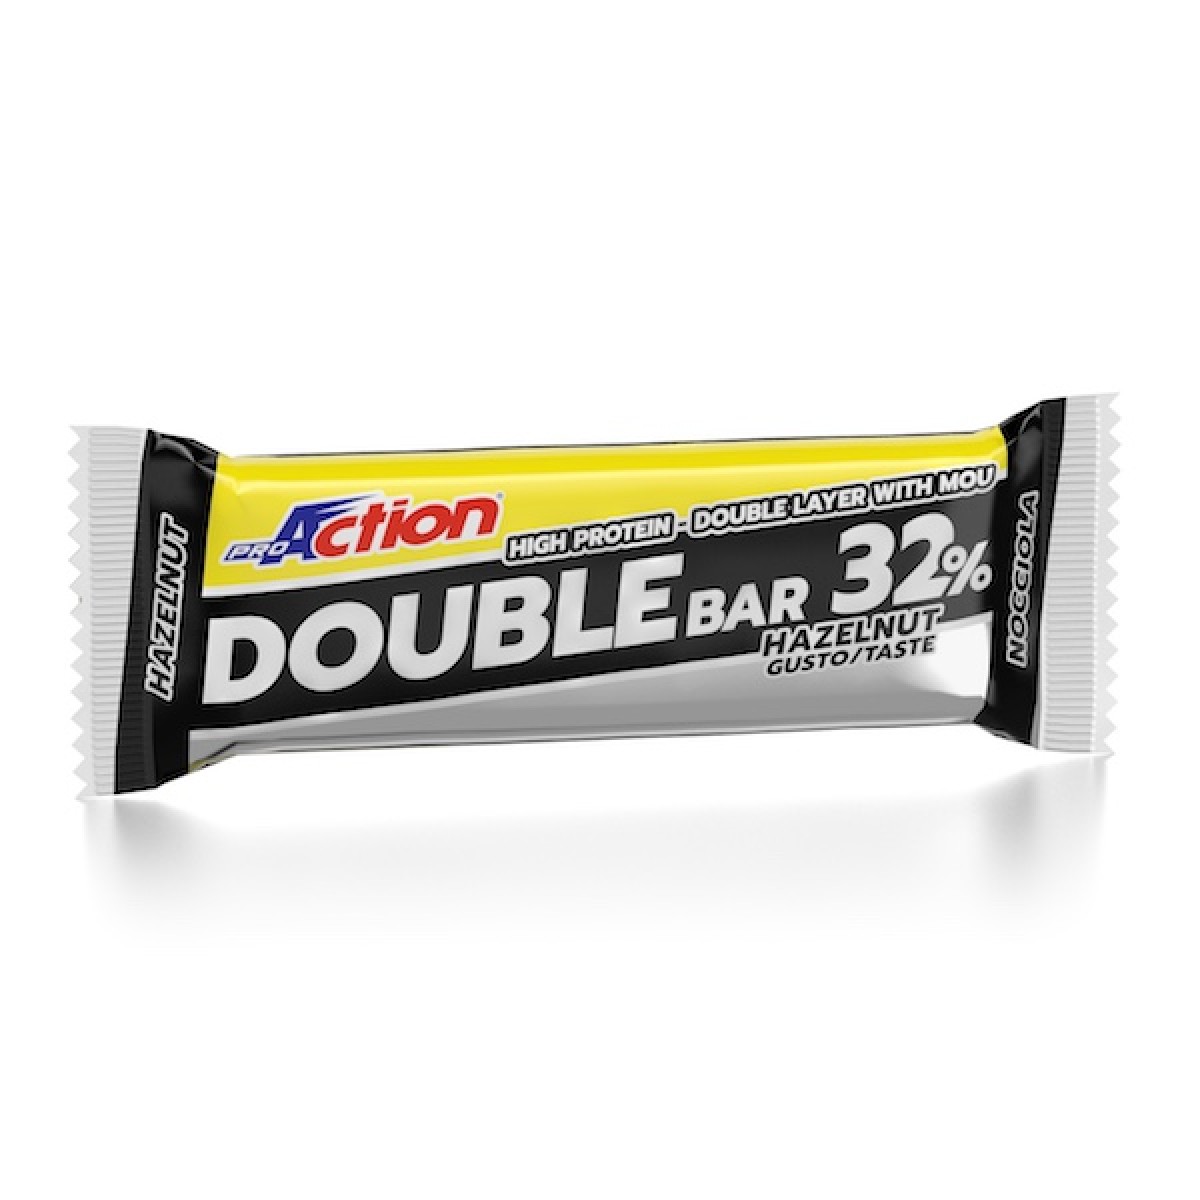 Image of Double Bar 32% Nocciola/Caramello ProAction 60g